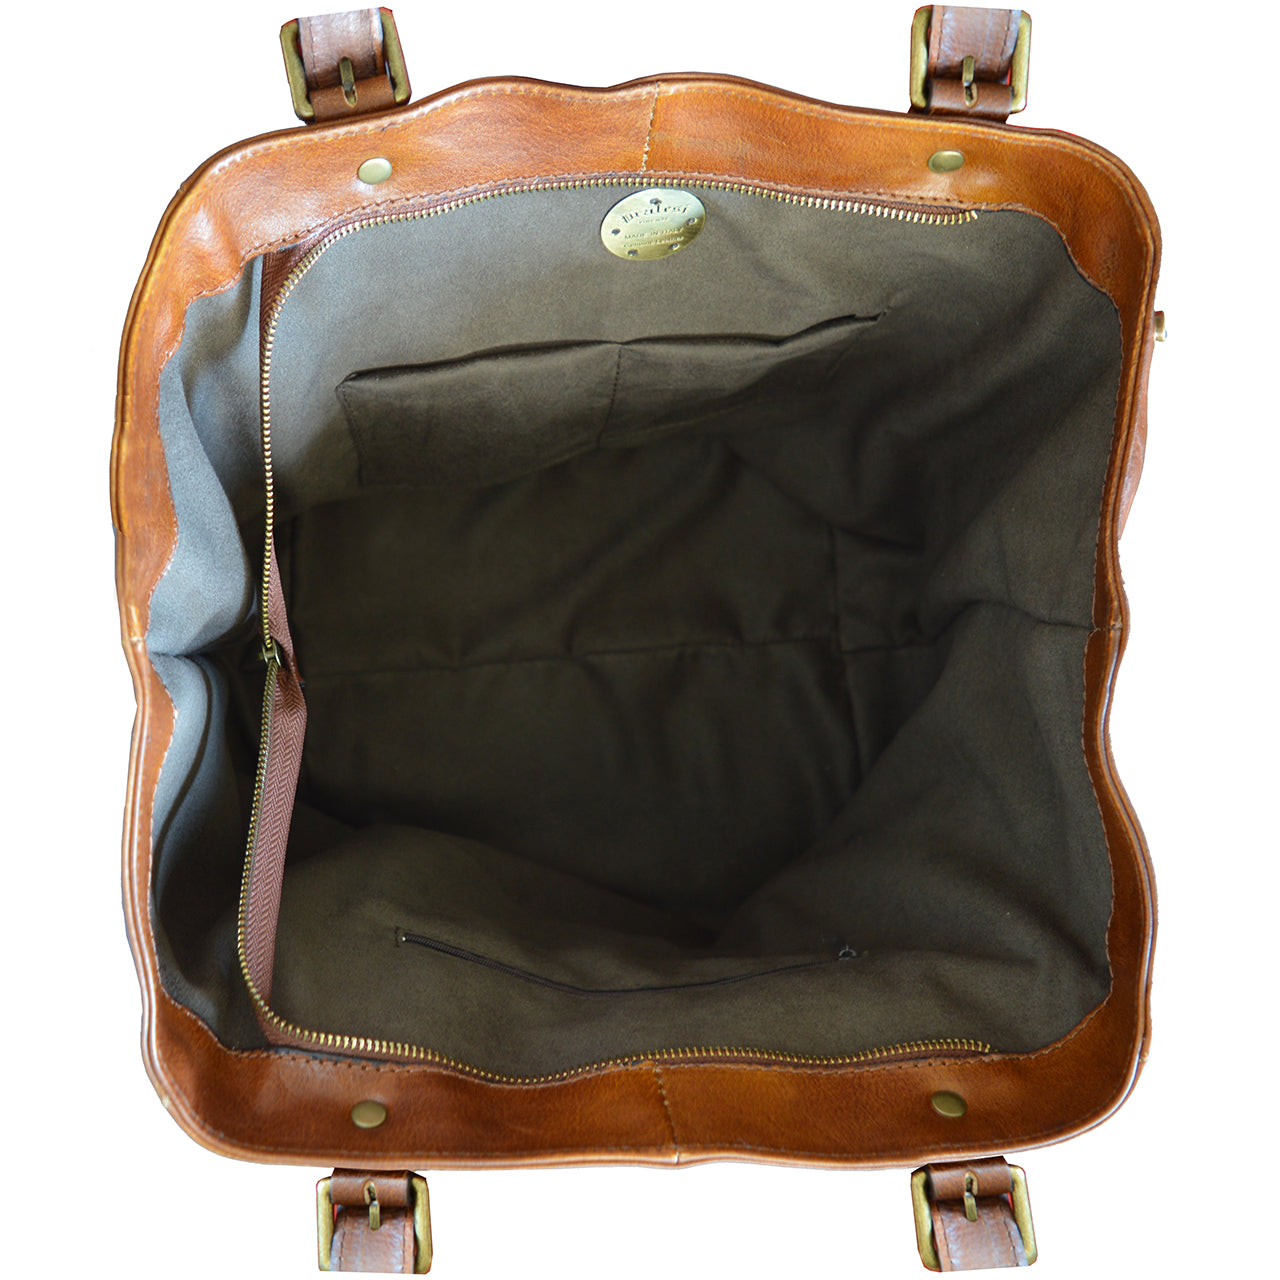 Pratesi Woman Bag Talamone in genuine Italian leather